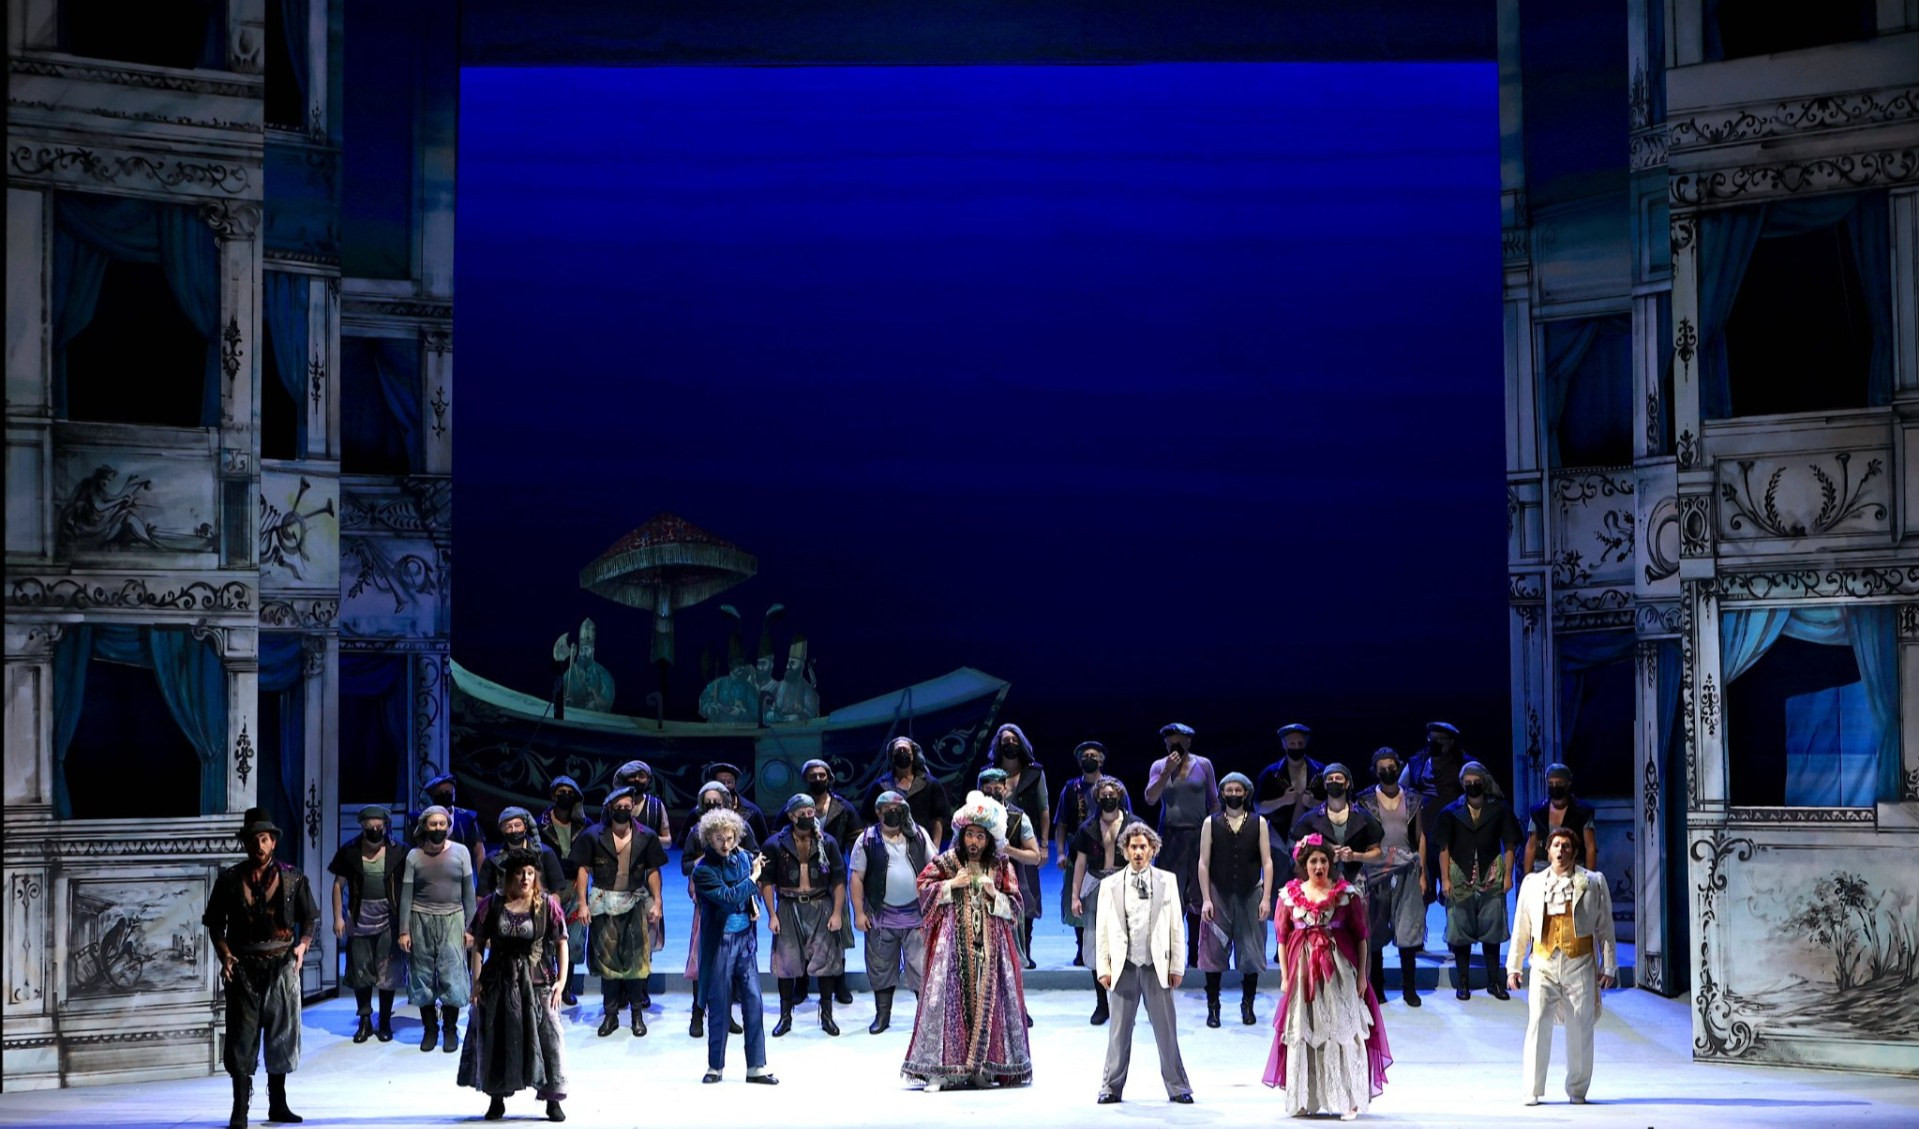 Da tutta Italia al Carlo Felice per la lirica, debuttano i giovani dell'Accademia con Rossini